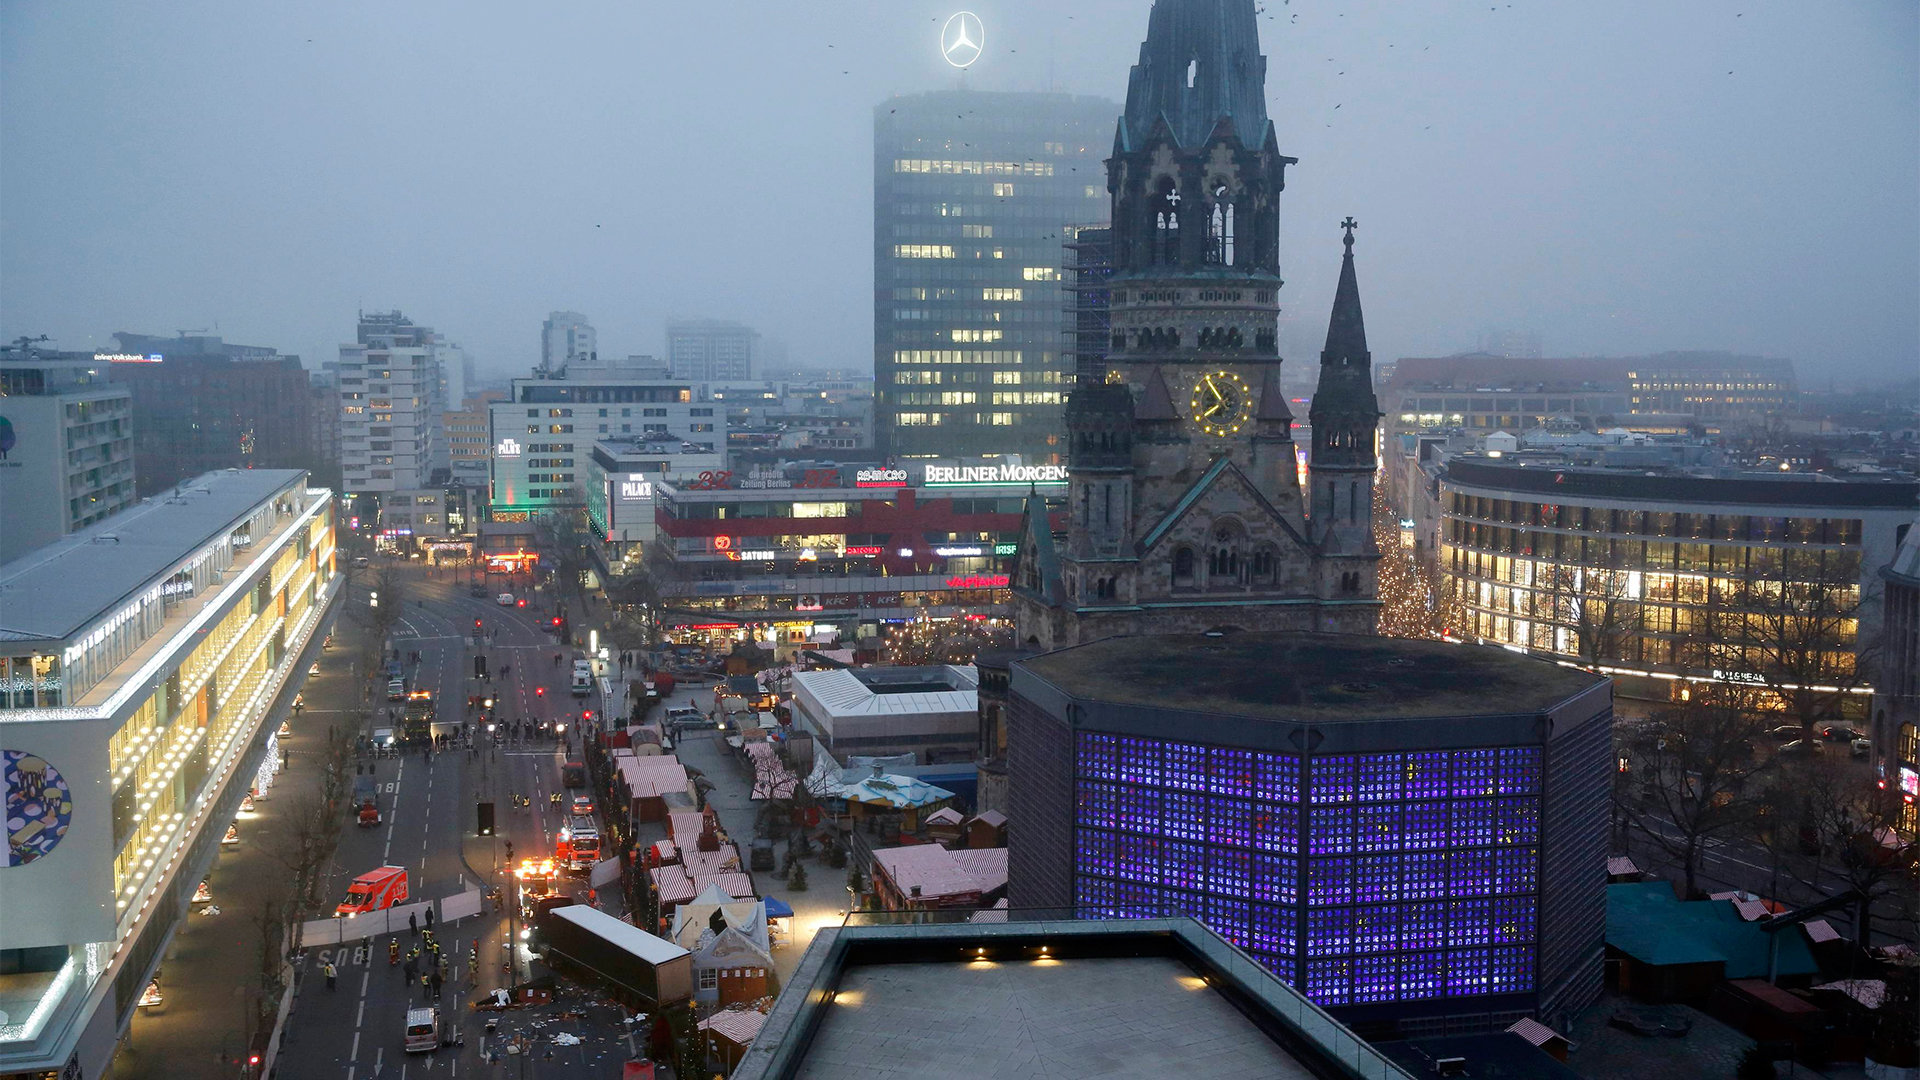 Nach dem Anschlag auf dem Weihnachtsmarkt am Berliner Breitscheidplatz | REUTERS